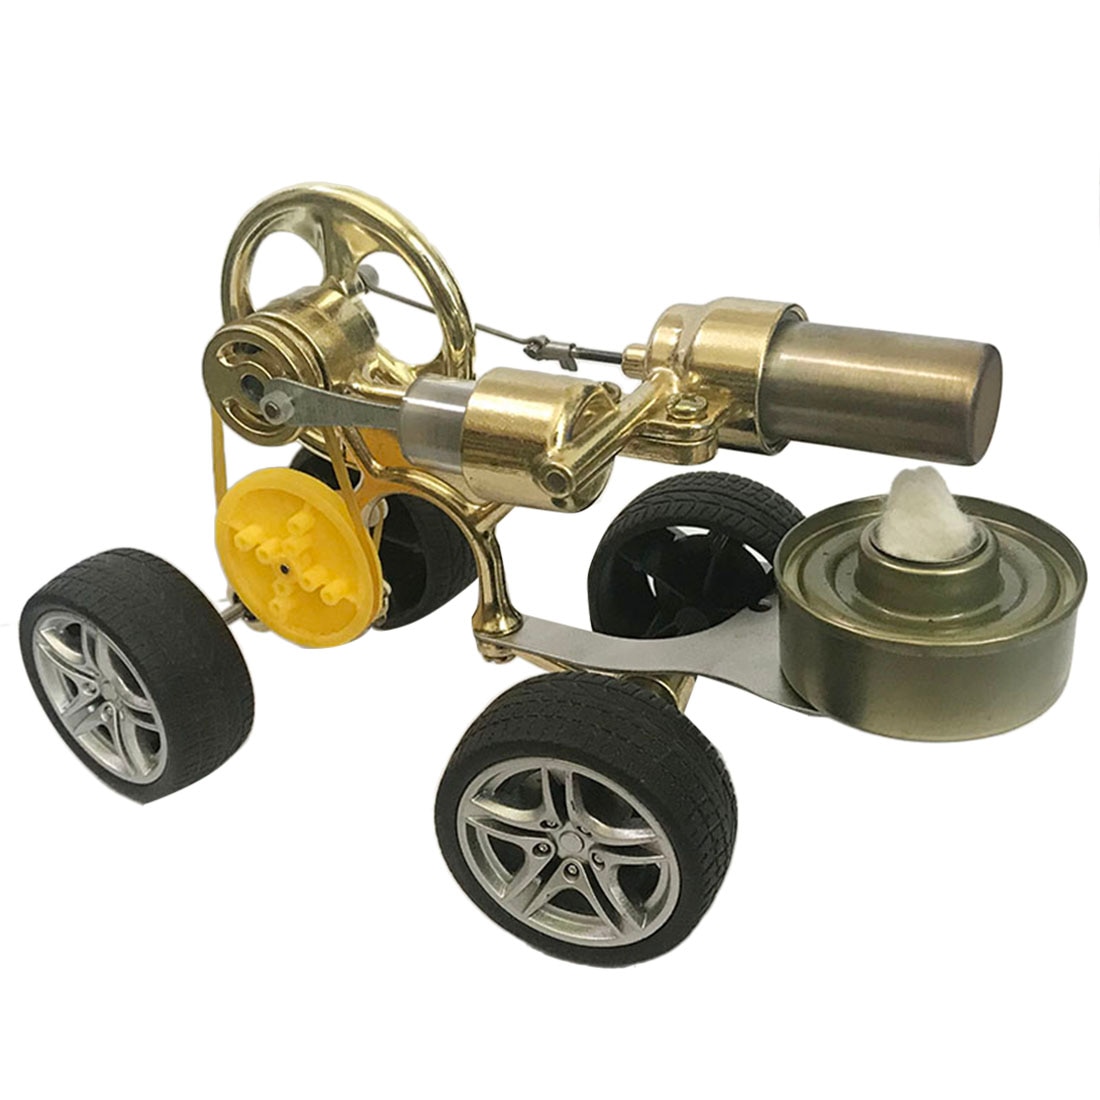 Single Cylinder Stirling Engine Model Runnable Car Motor Model - Golden 1